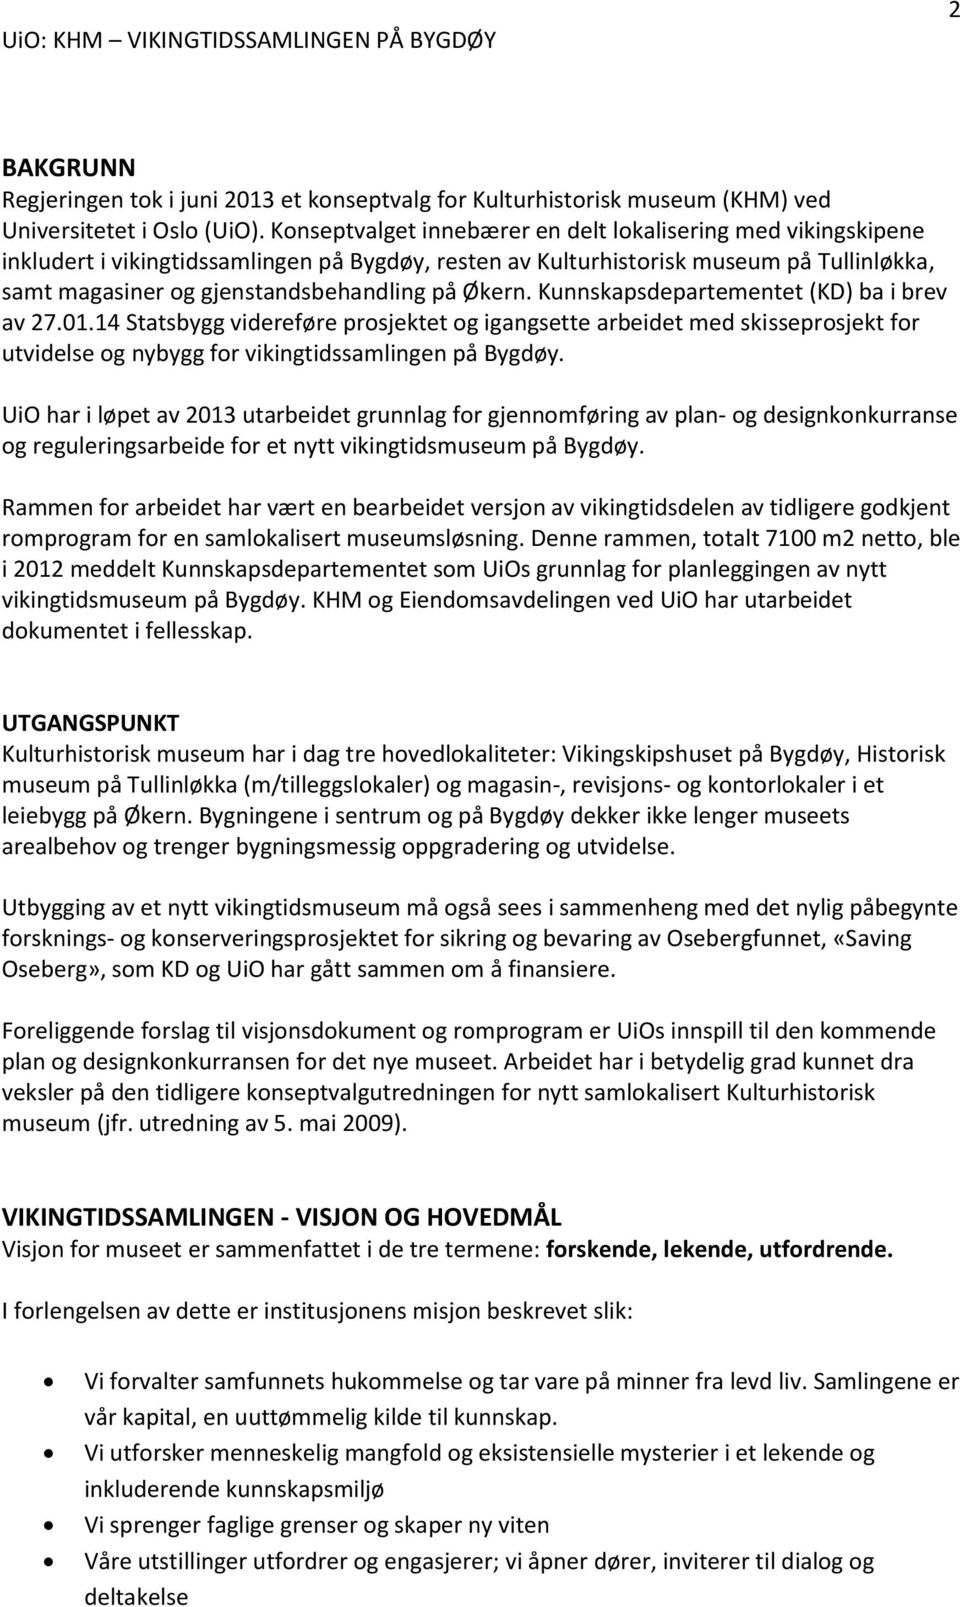 Økern. Kunnskapsdepartementet (KD) ba i brev av 27.01.14 Statsbygg videreføre prosjektet og igangsette arbeidet med skisseprosjekt for utvidelse og nybygg for vikingtidssamlingen på Bygdøy.